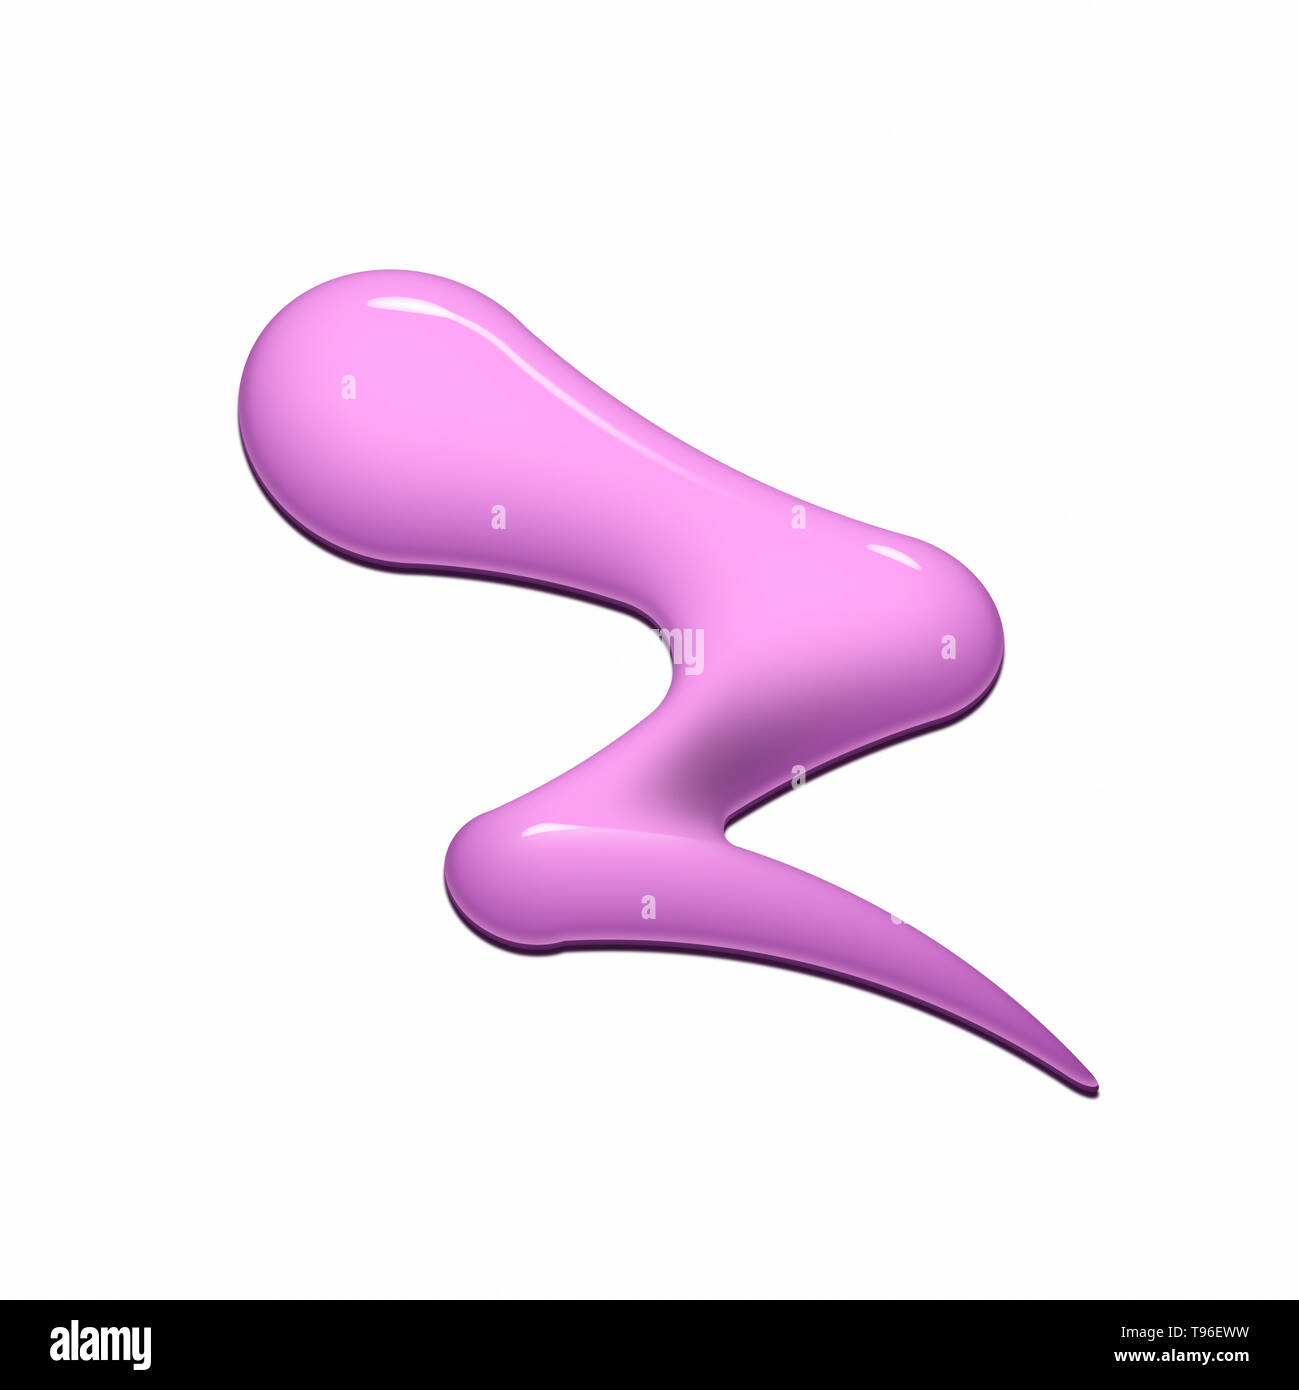 Immagine digitale di versata vernice rosa in forma a zig-zag su sfondo bianco Foto Stock